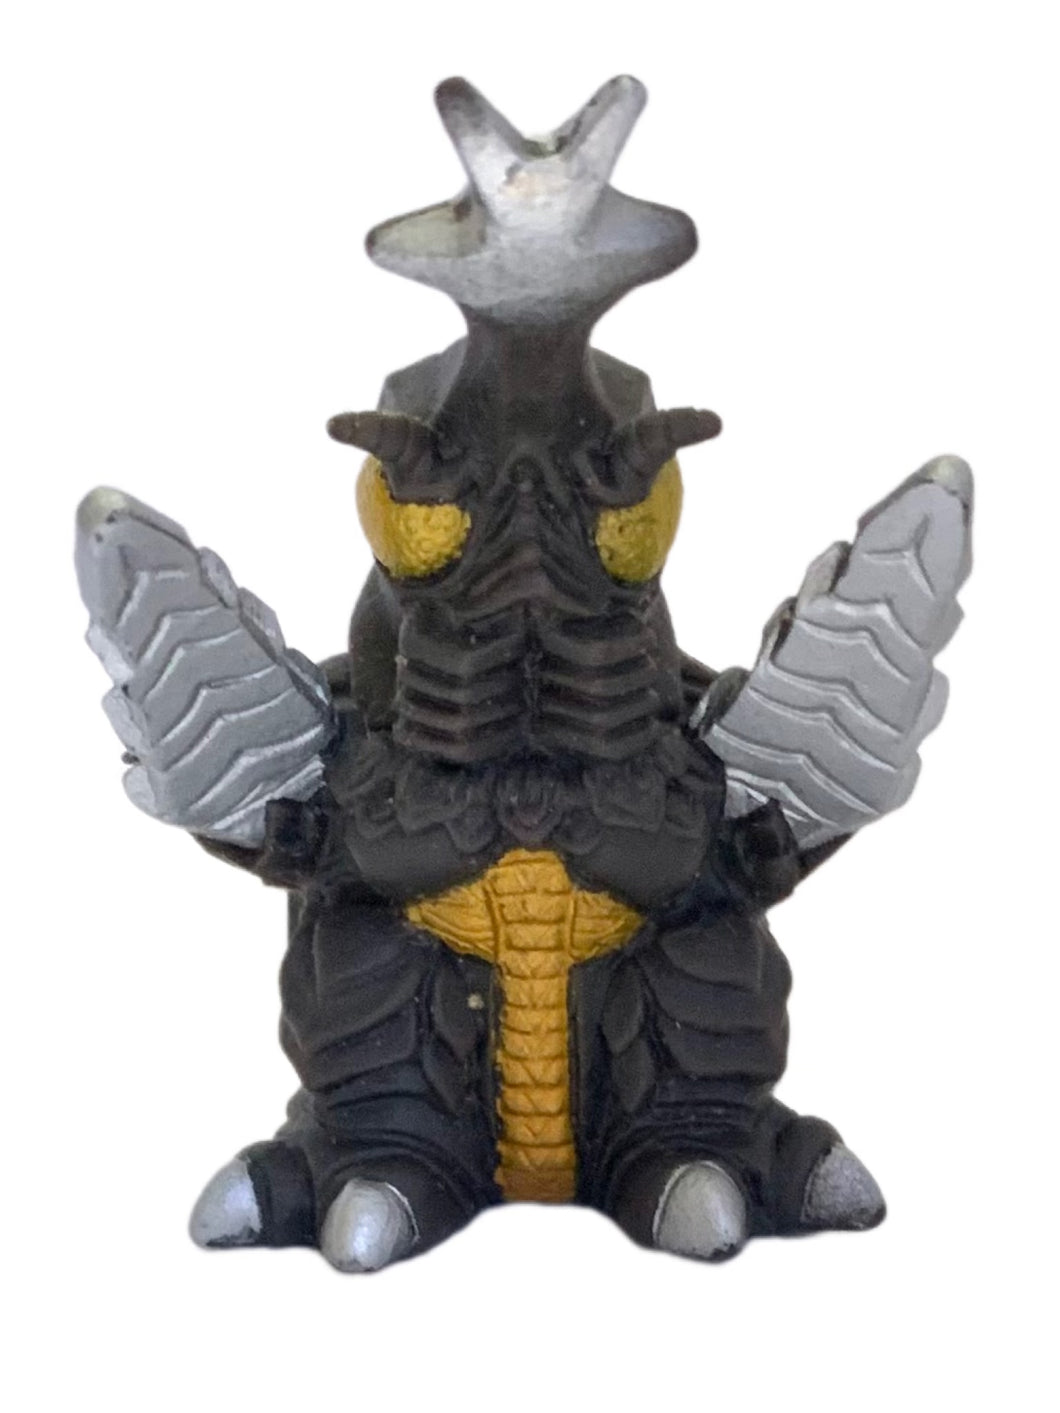 Gojira - Megalon - Godzilla All-Out Attack - Trading Figure